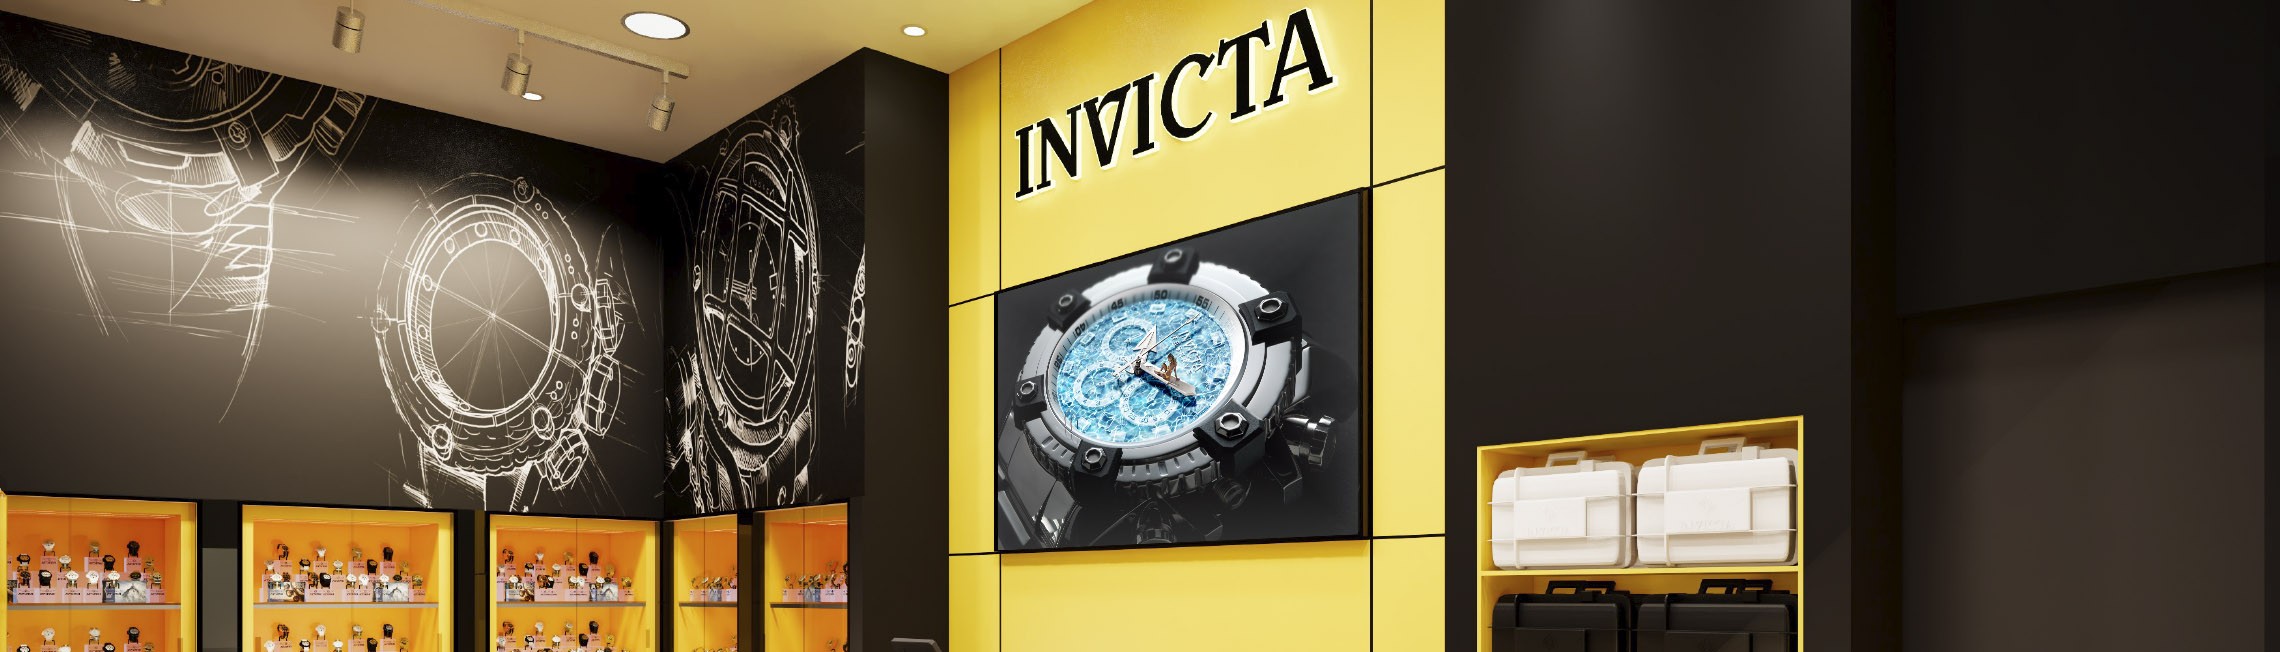 Invicta Watch Banner